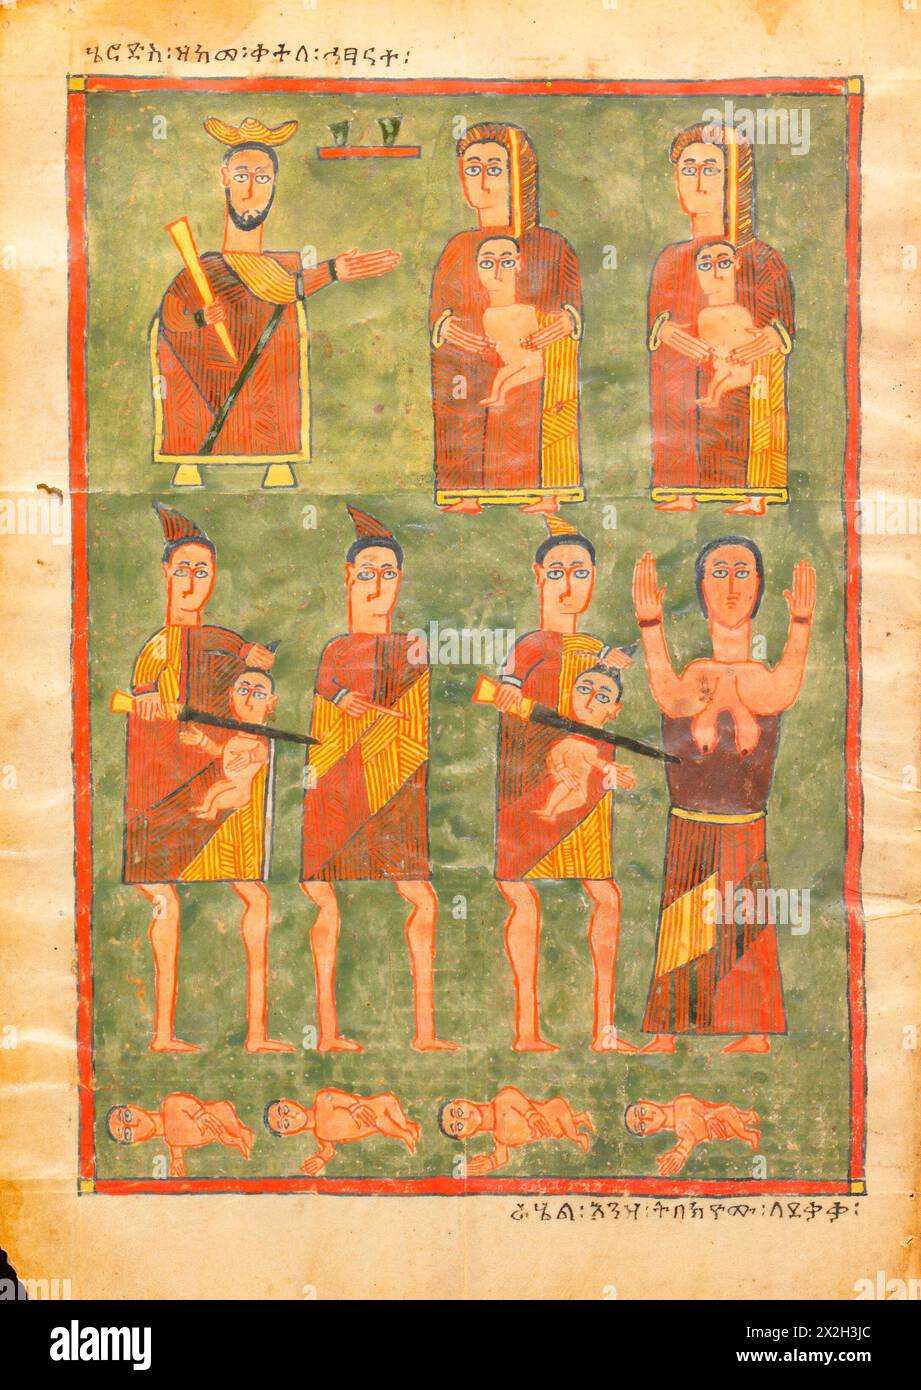 Evangile illuminé - peuples Amhara - le massacre des innocents - fin du XIVe au début du XVe siècle Banque D'Images